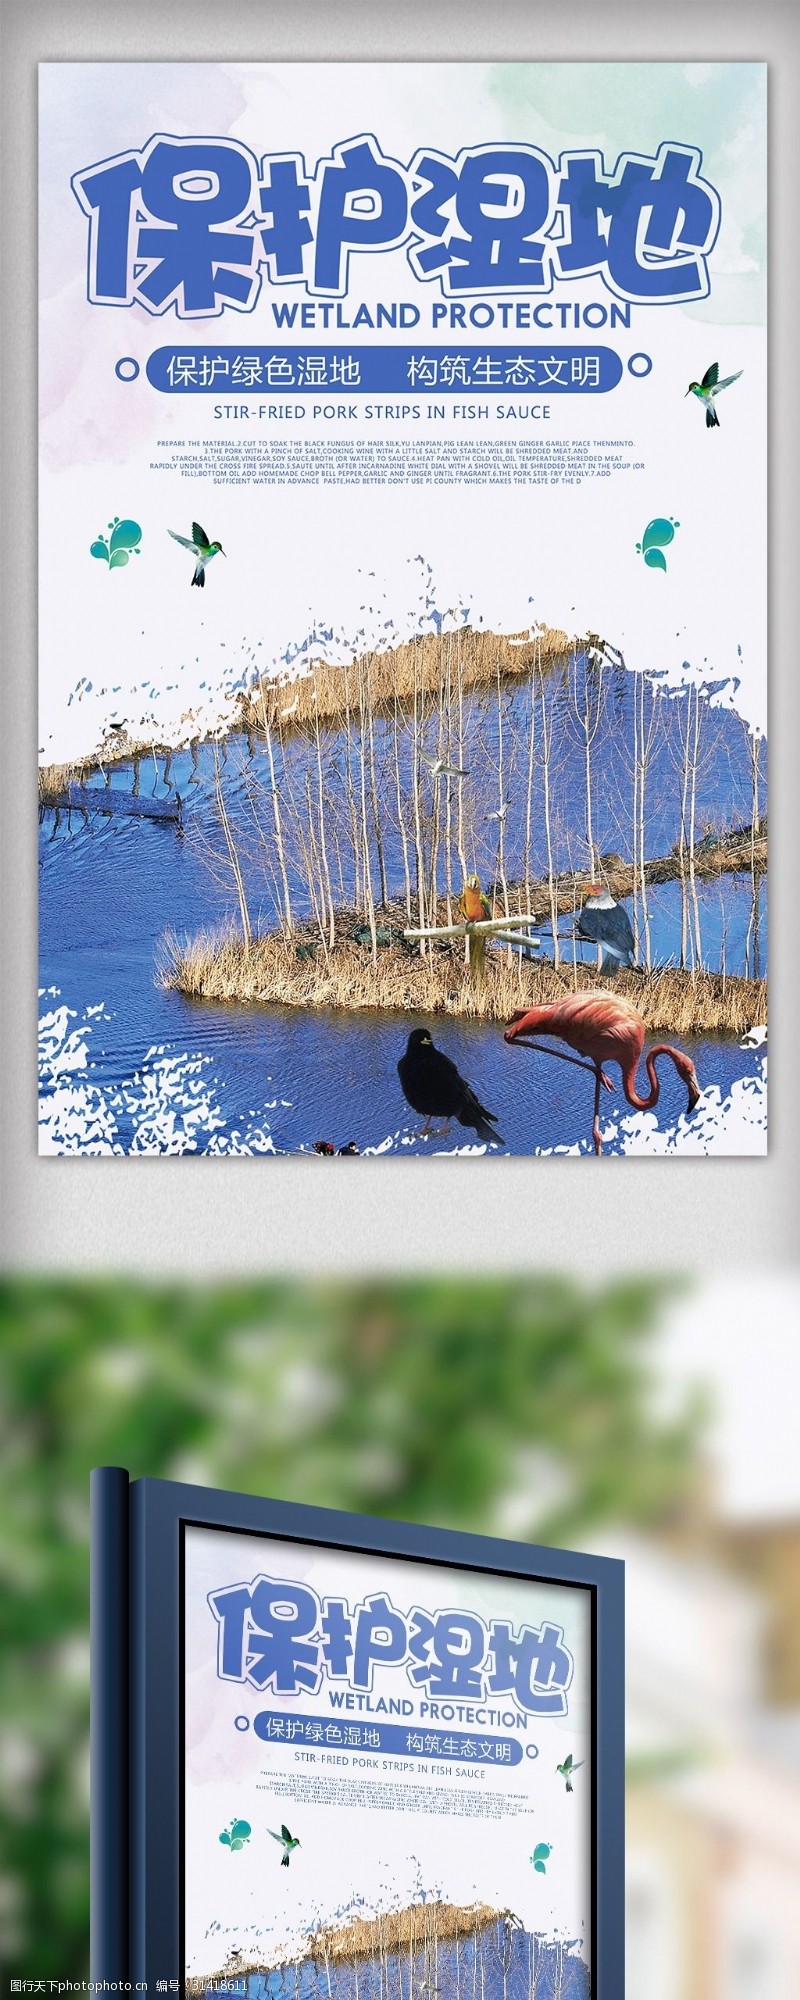 世界湿地日2018蓝色清新湿地保护公益海报设计